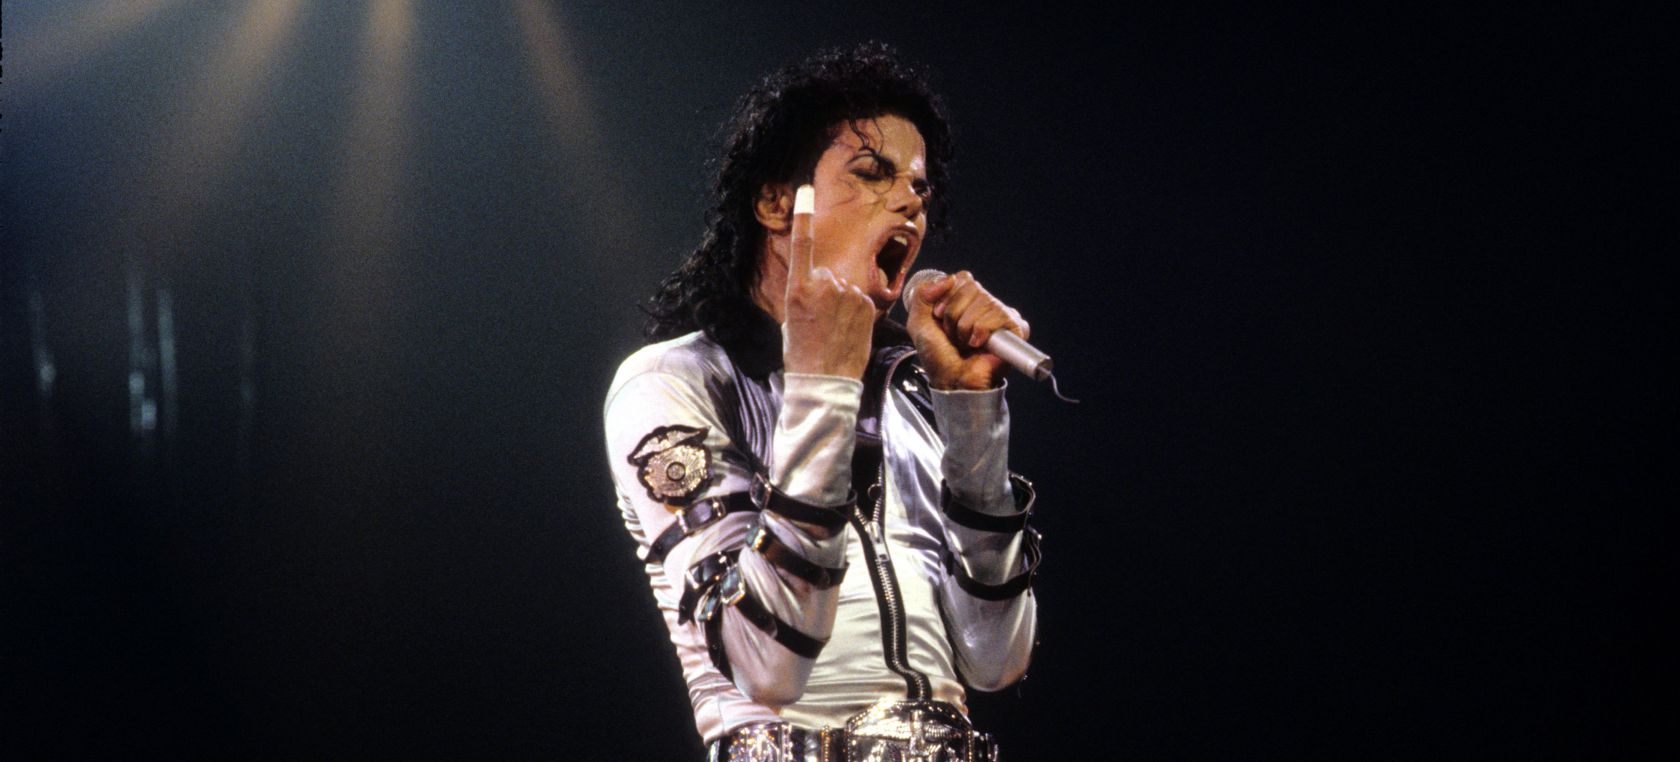 'Bad', el eterno disco segundón de Michael Jackson, cumple 34 años